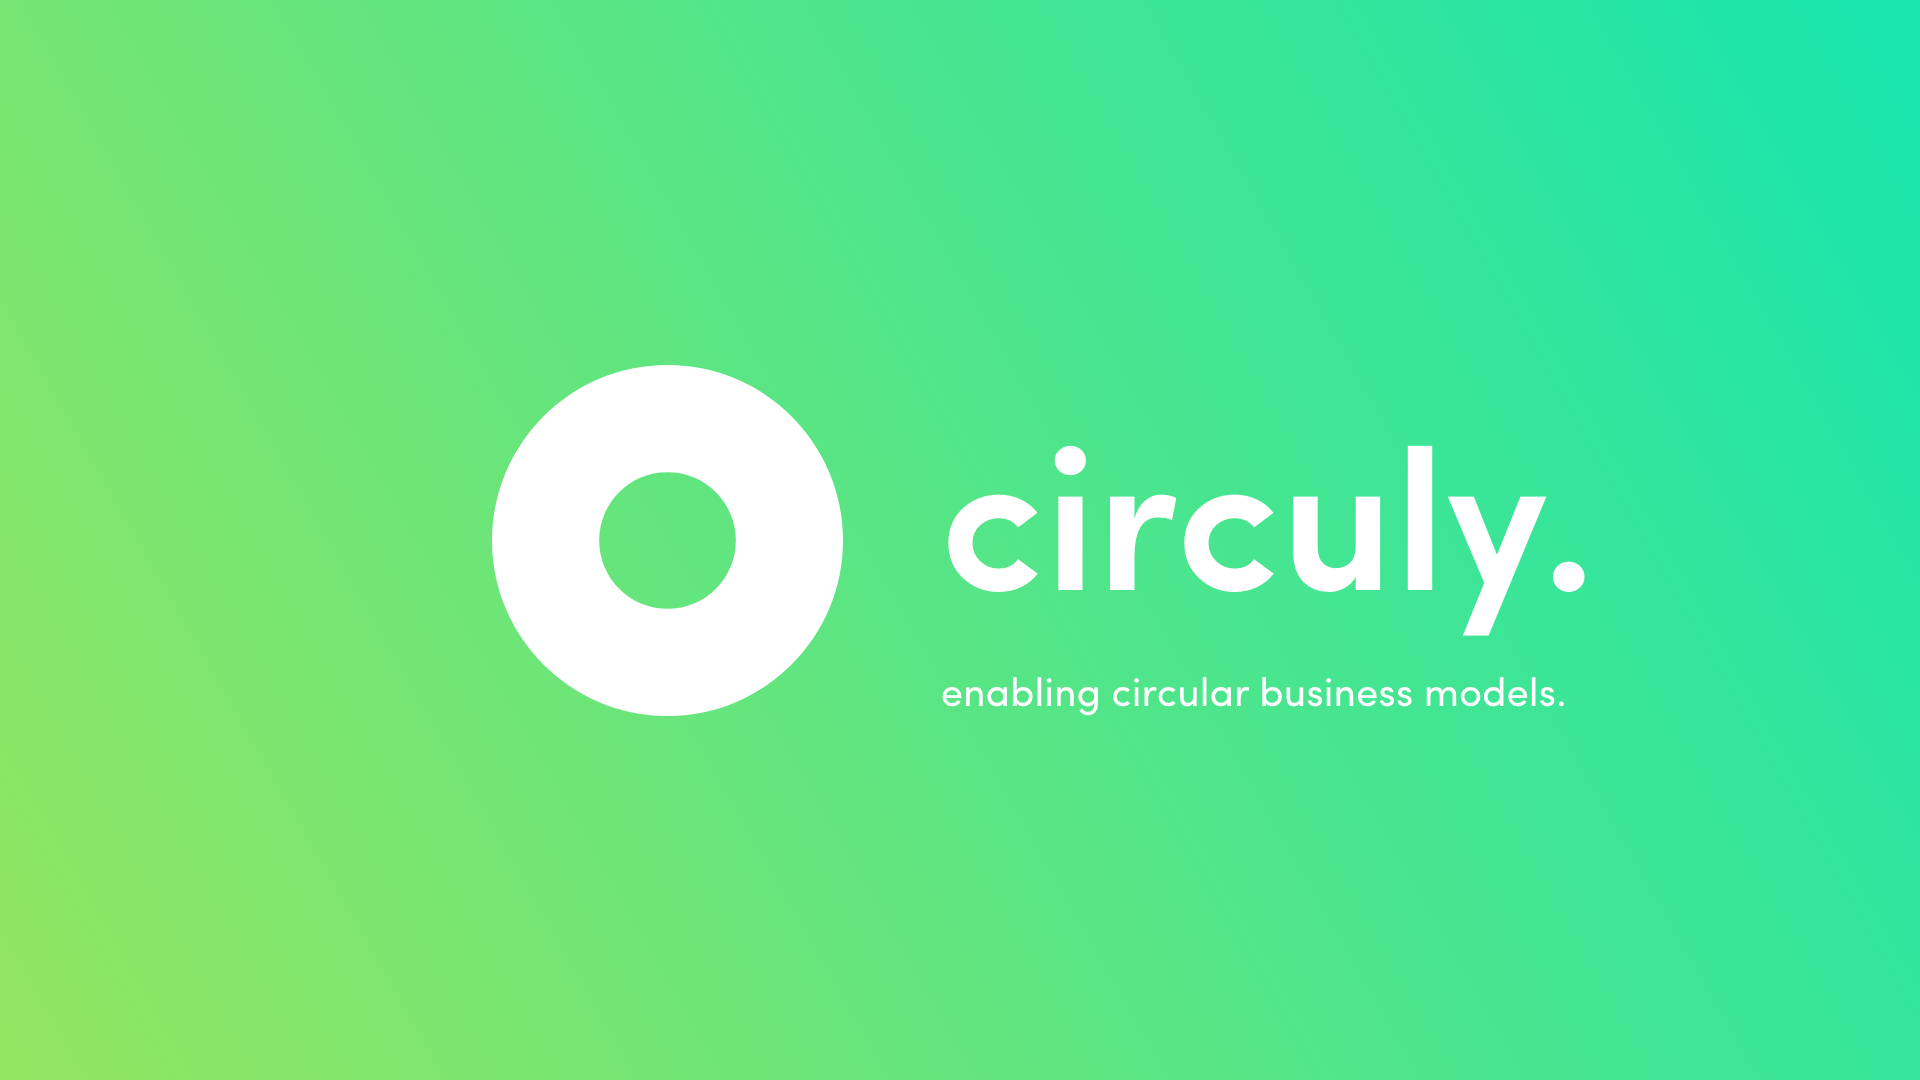 circuly / startup von Bielefeld / Background